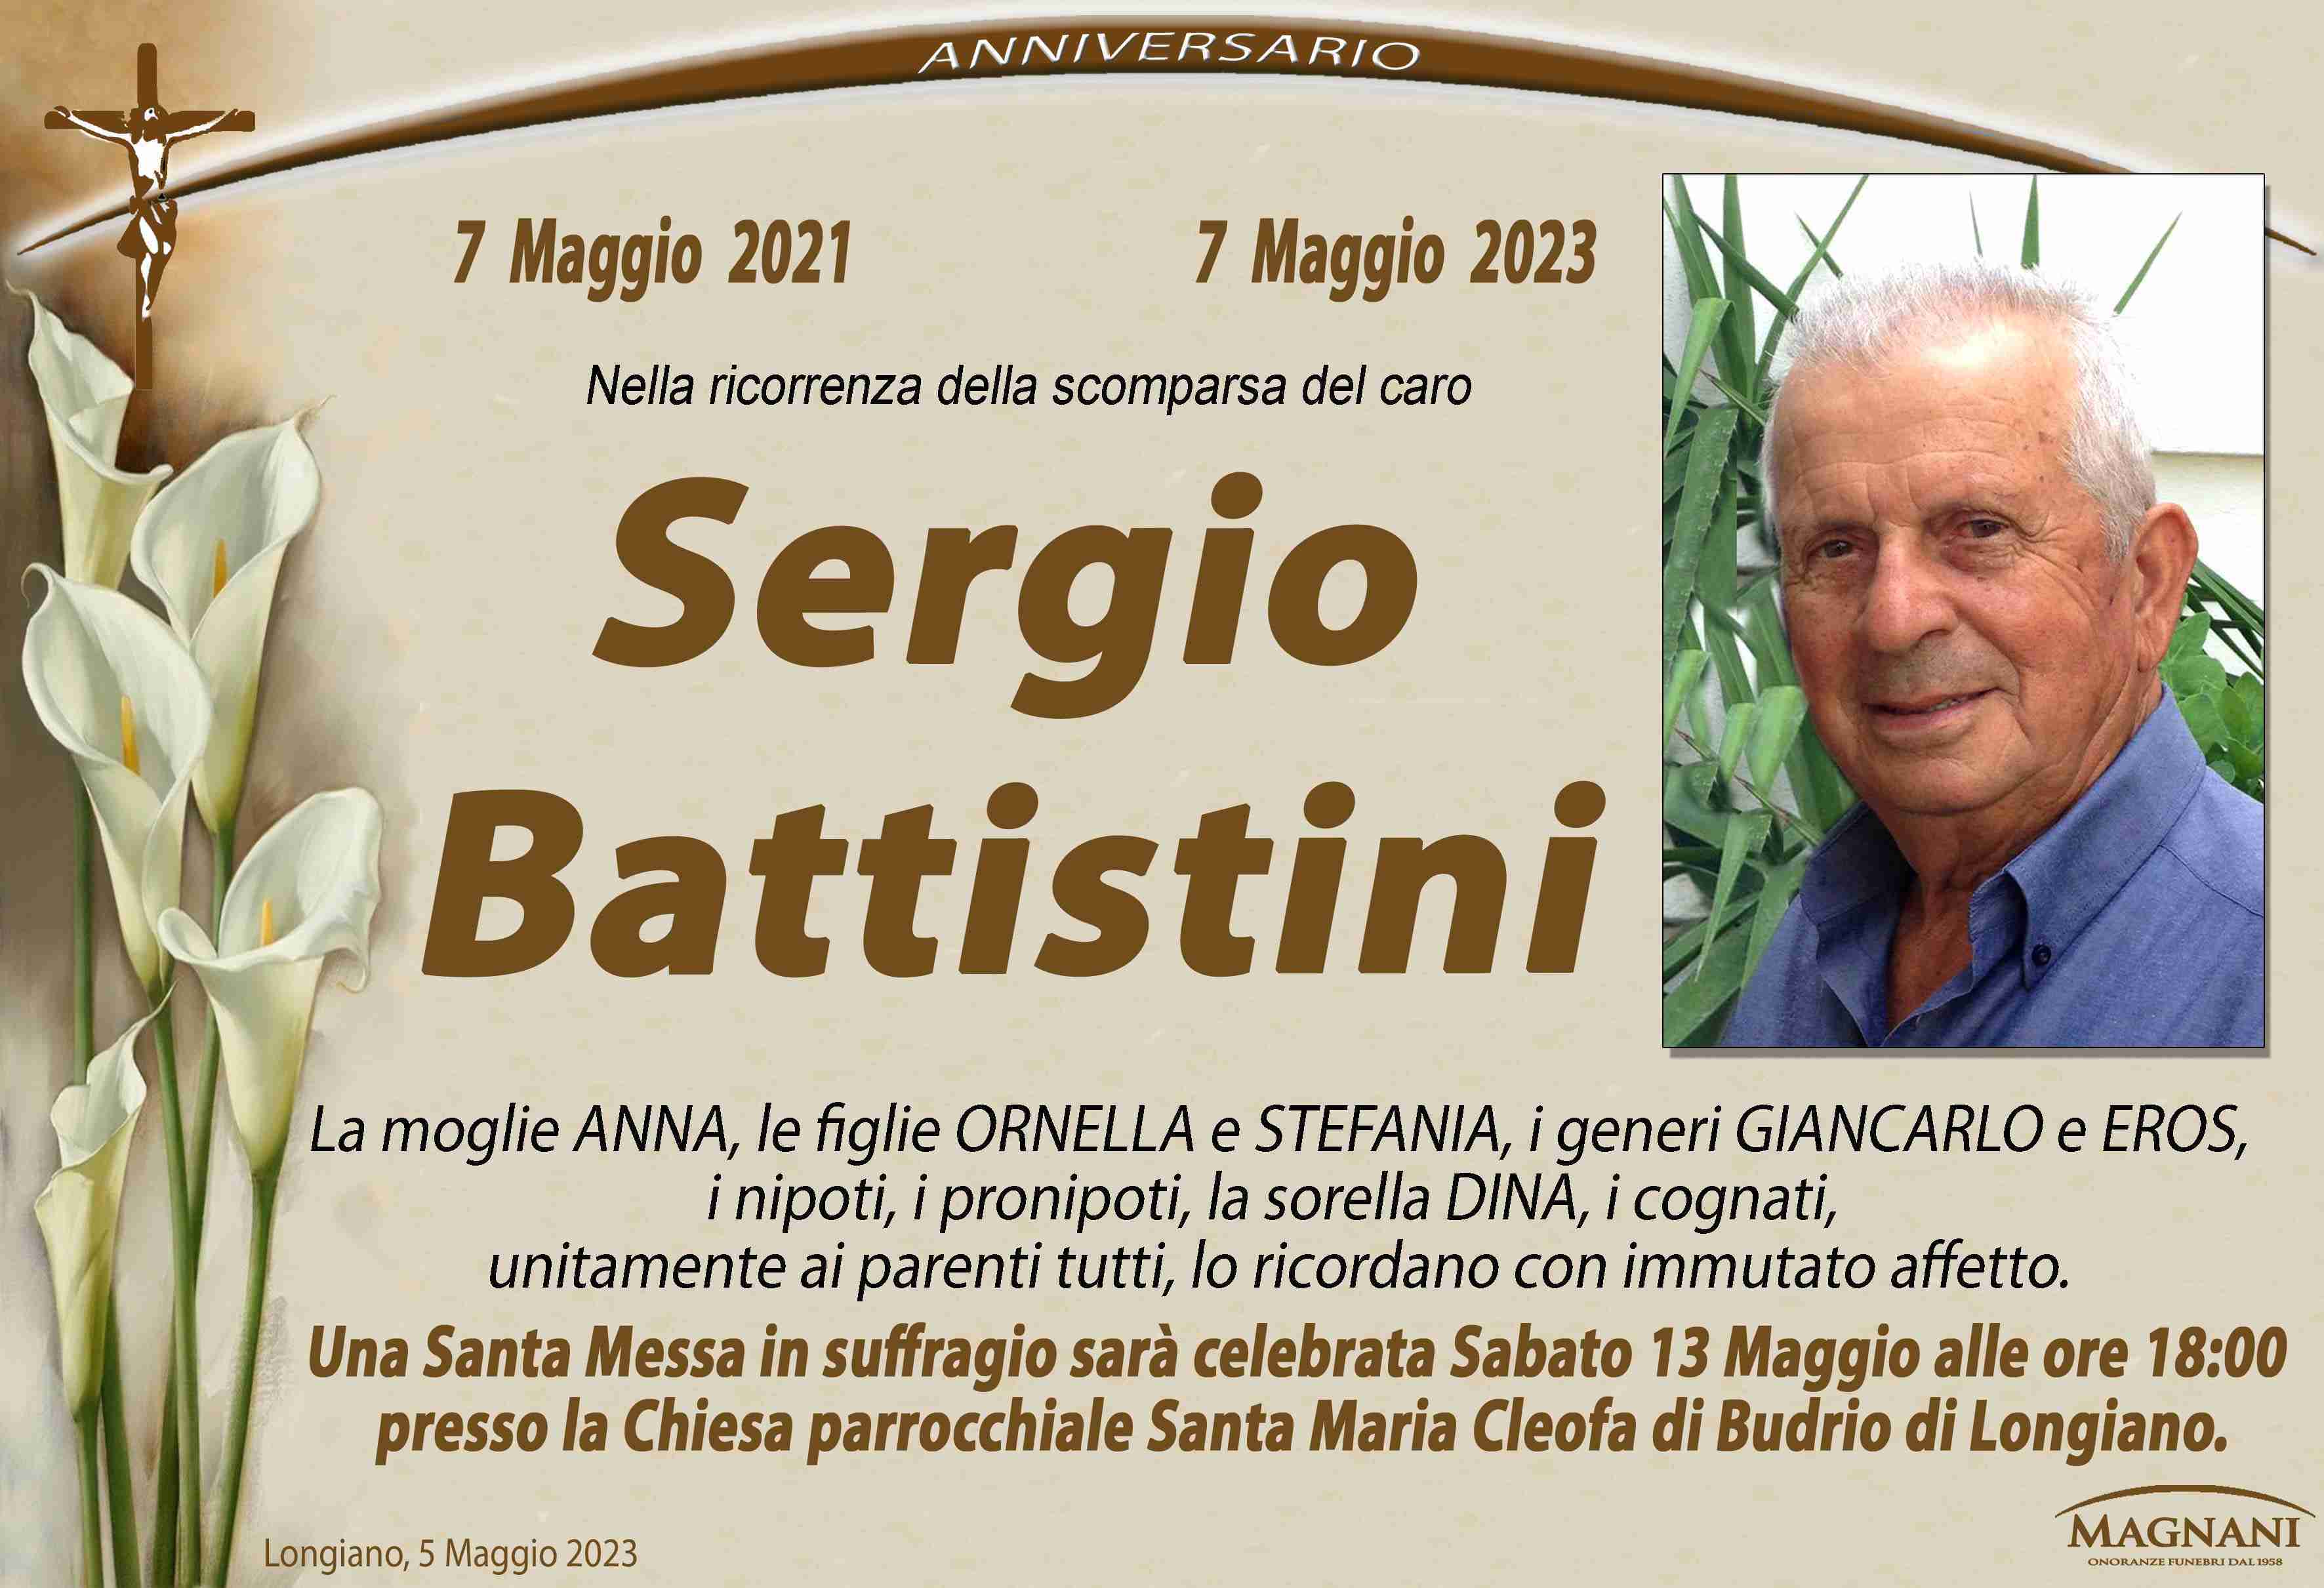 Sergio Battistini